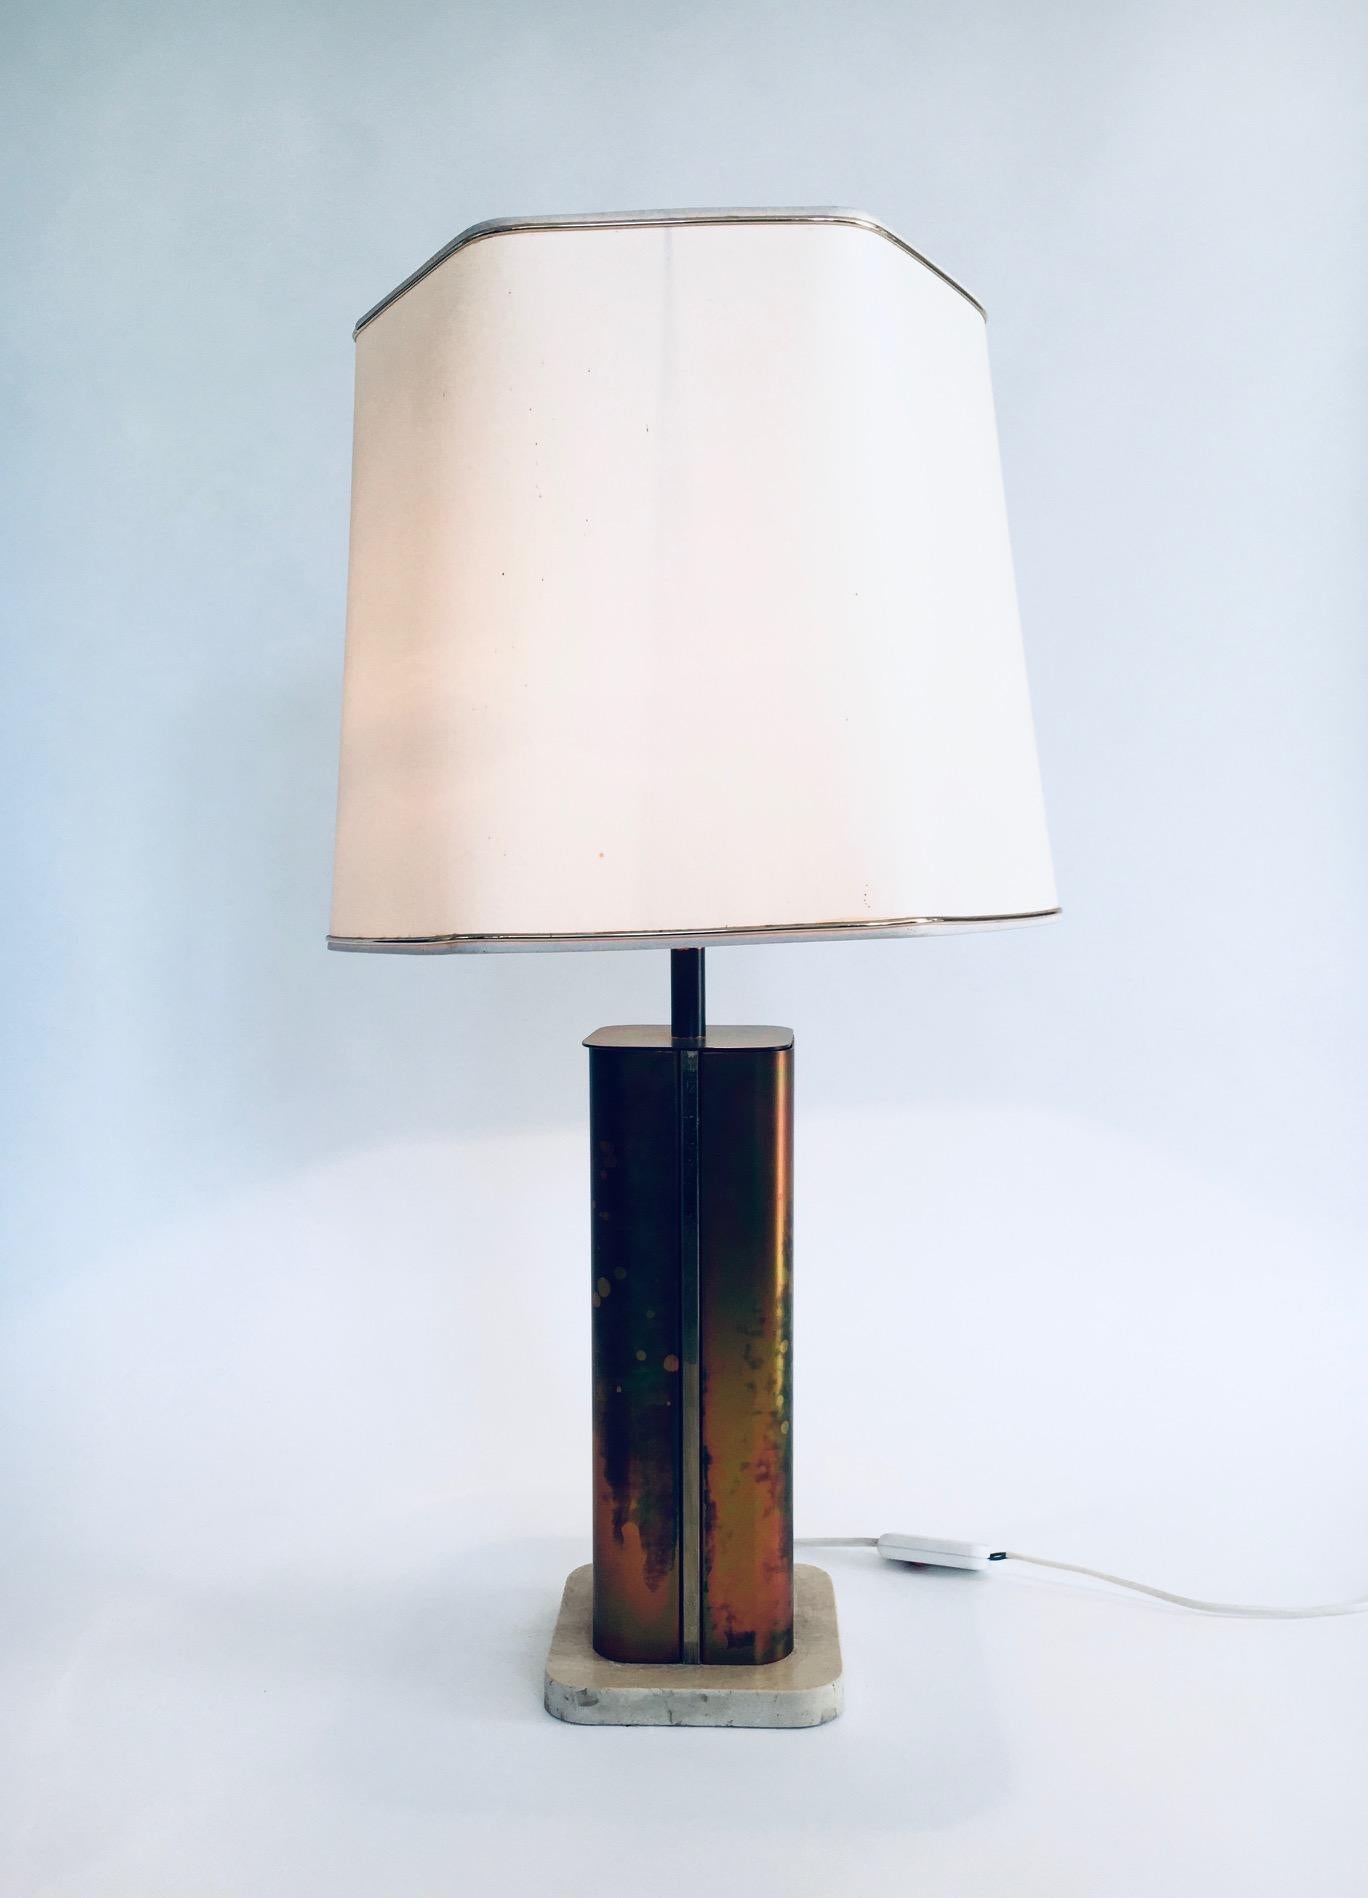 Vintage Hollywood Regency Style Postmodern Design Tischlampe von Fedam, hergestellt in den Niederlanden in den 1970er Jahren. Diese Tischlampe ist aus Messing, oxidiertem Messing und Travertinmarmor mit einem sechseckigen Lampenschirm gefertigt. Der